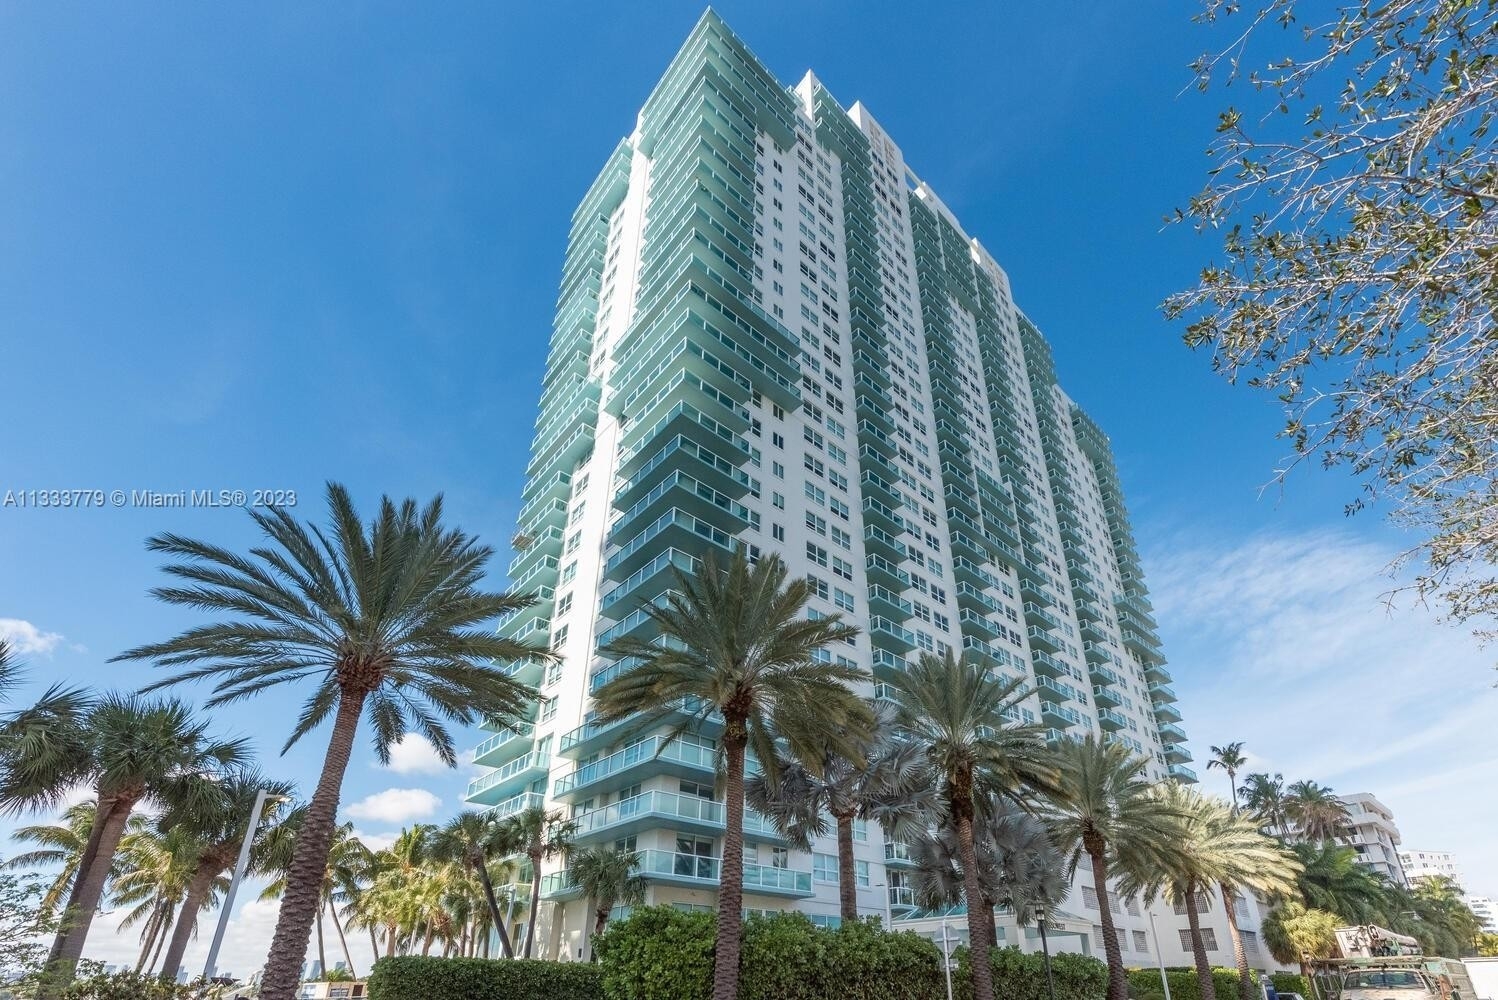 Condominium for Sale at 650 West Ave, 406 West Avenue, Miami Beach, FL 33139